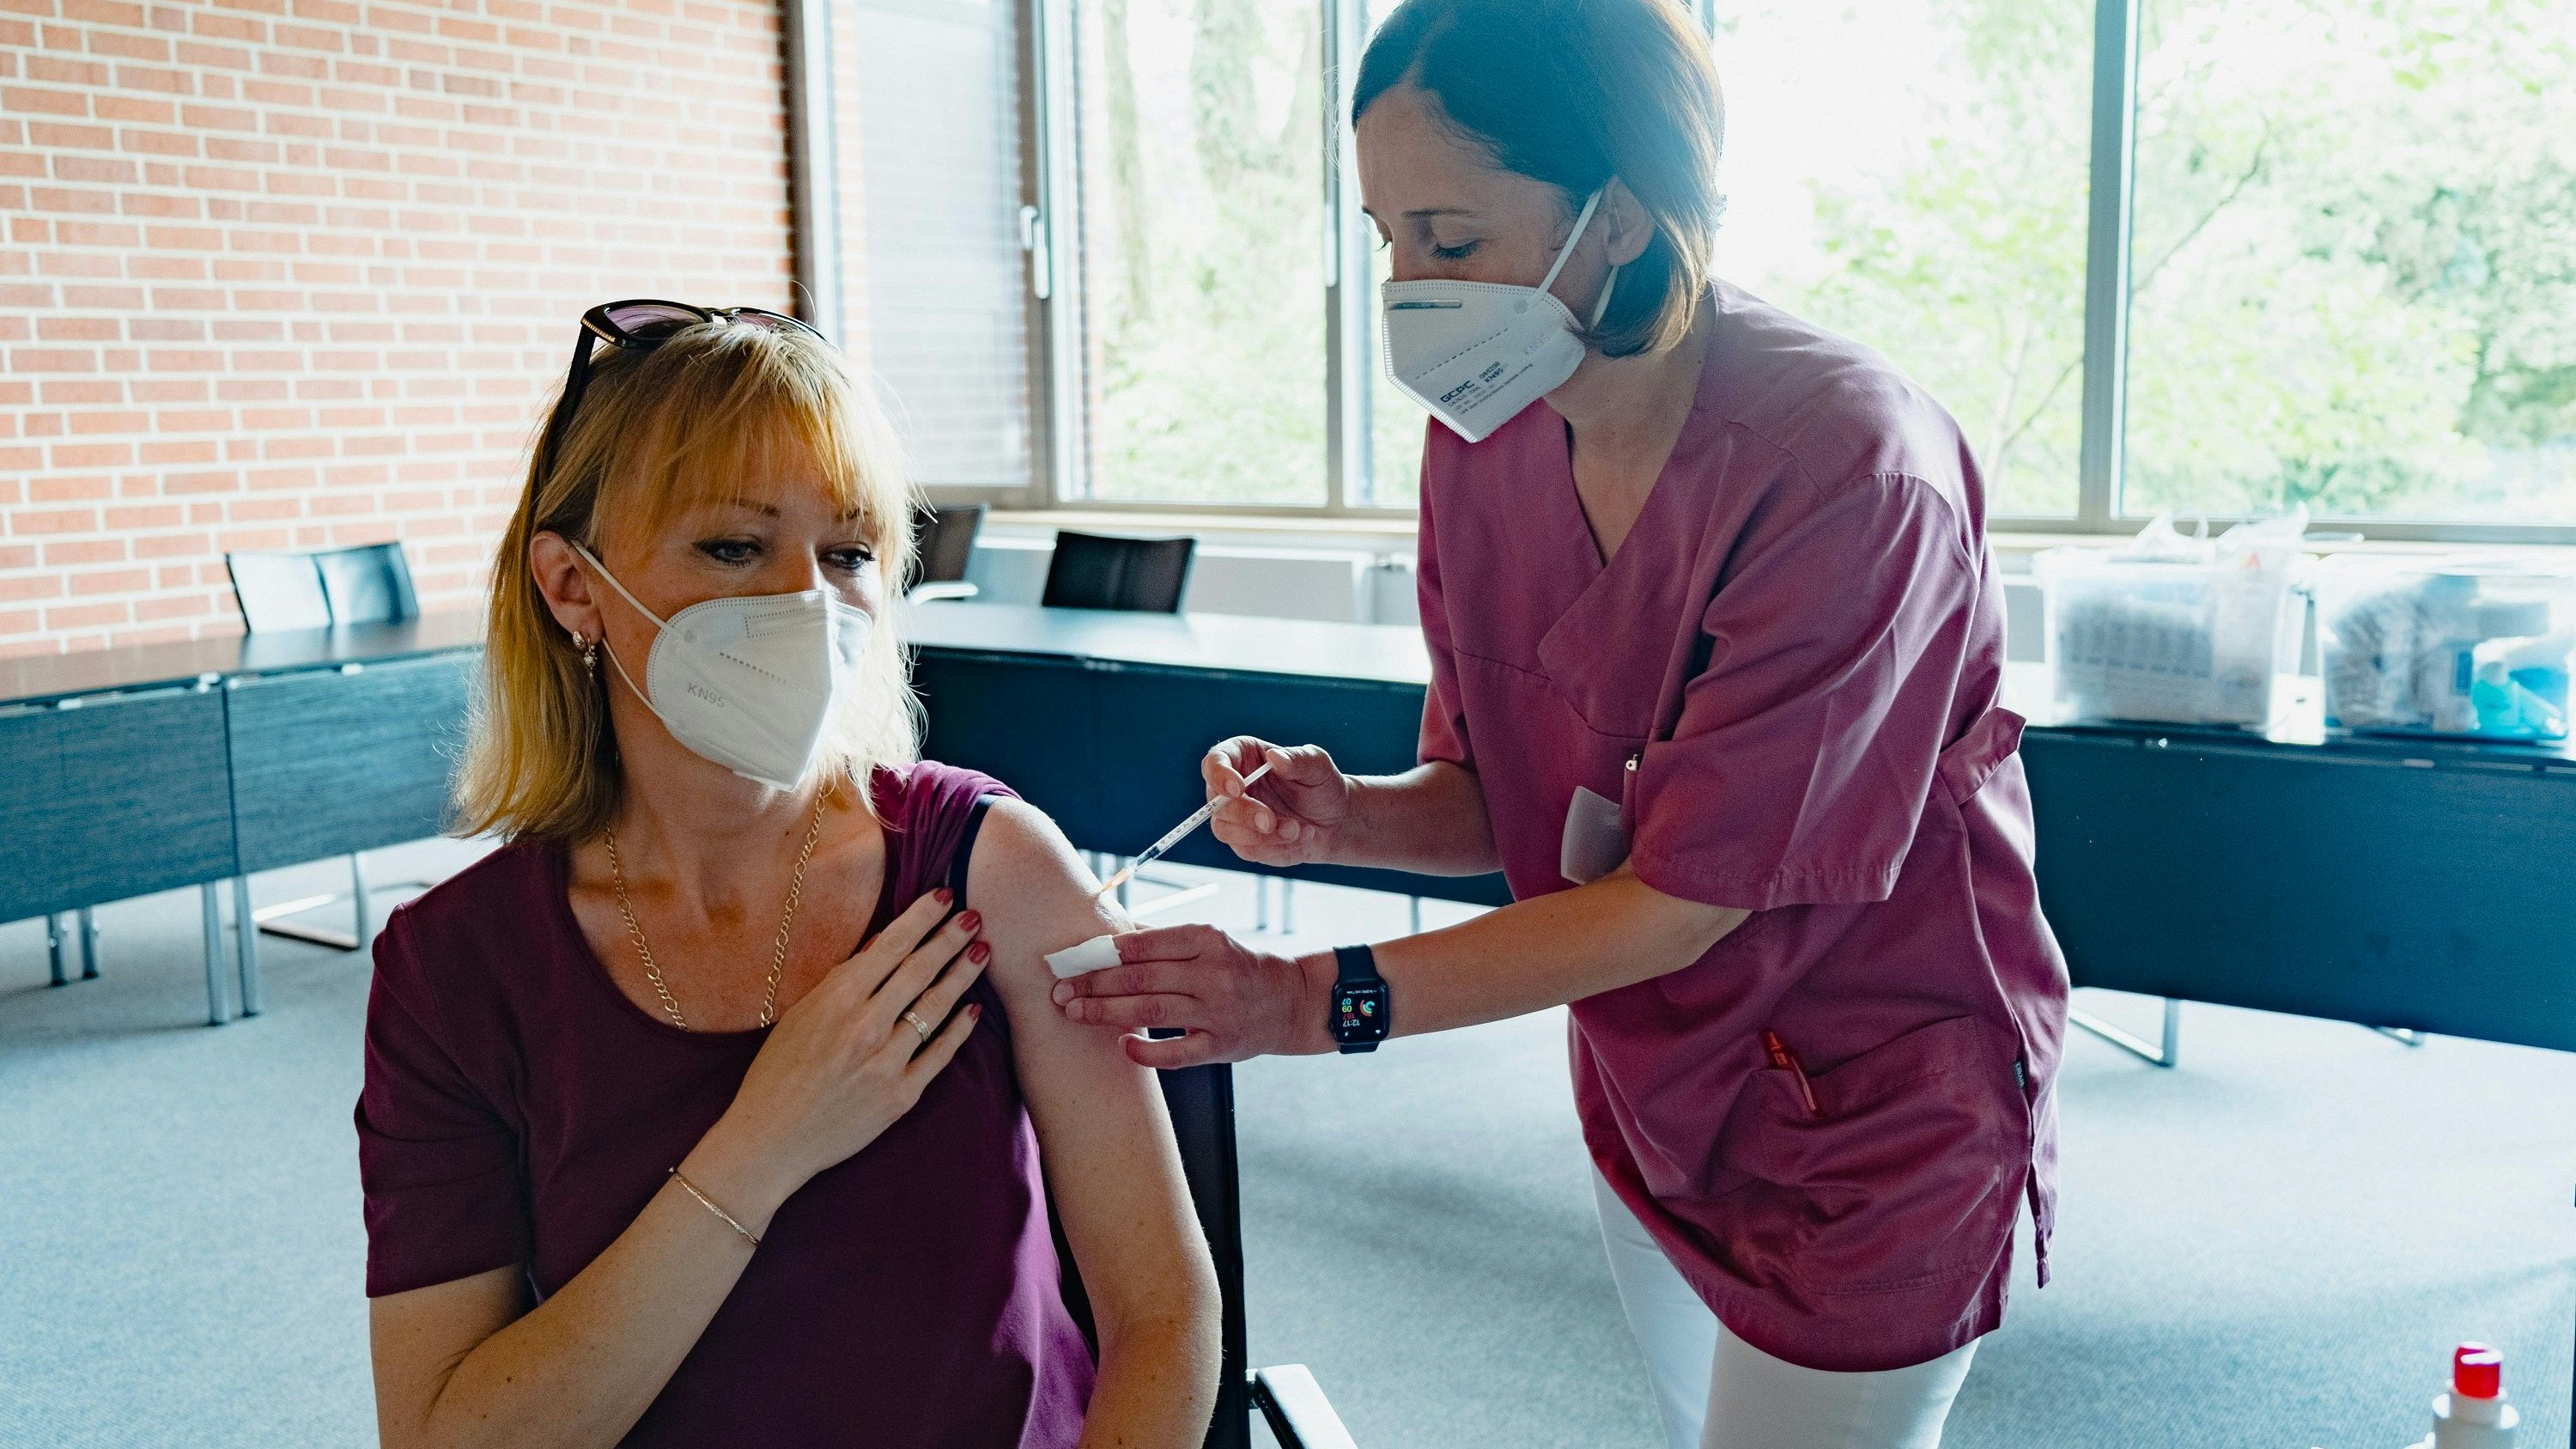 Geimpft: Feride Taskesen (rechts) vom mobilen Impfteam verabreicht Svitlana Nekrasova eine Corona-Impfung. Foto: Tombrägel